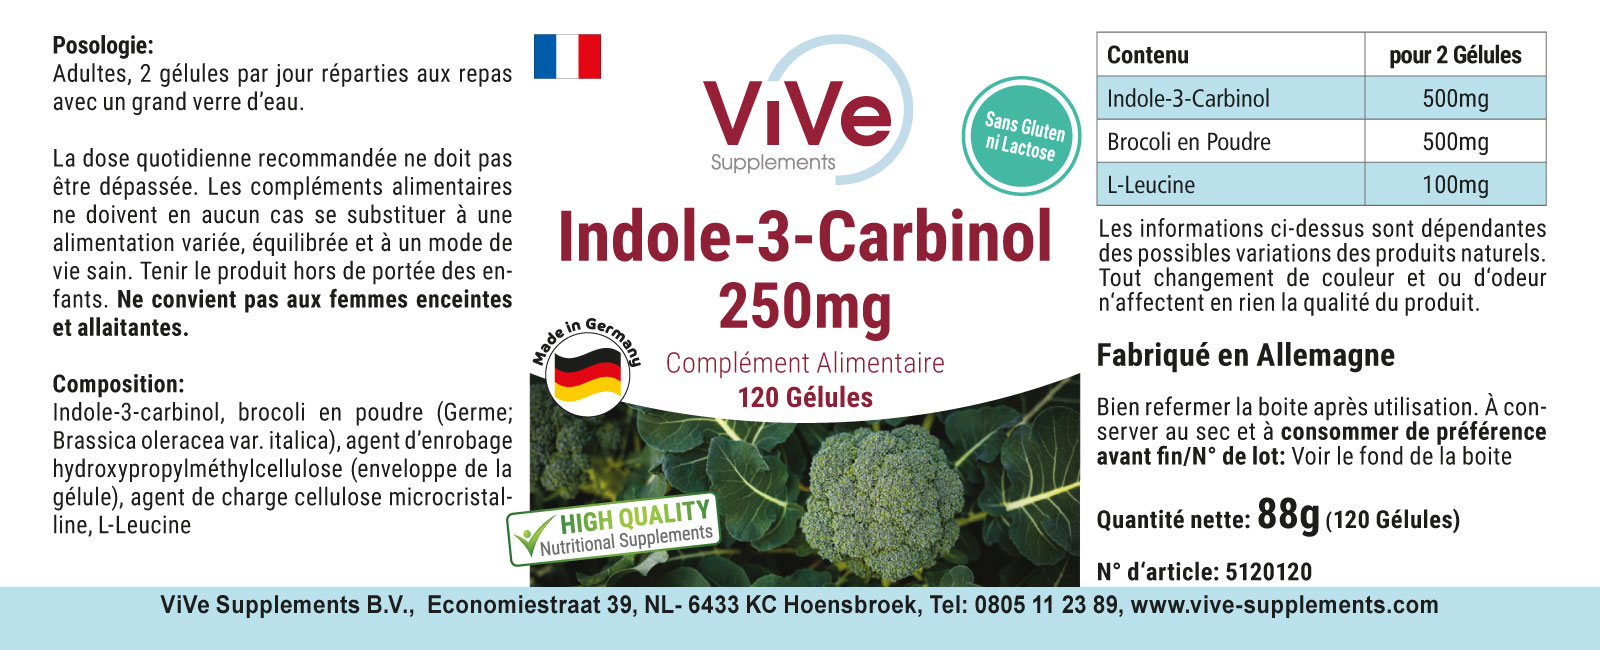 indolo-3-carbinolo-capsule